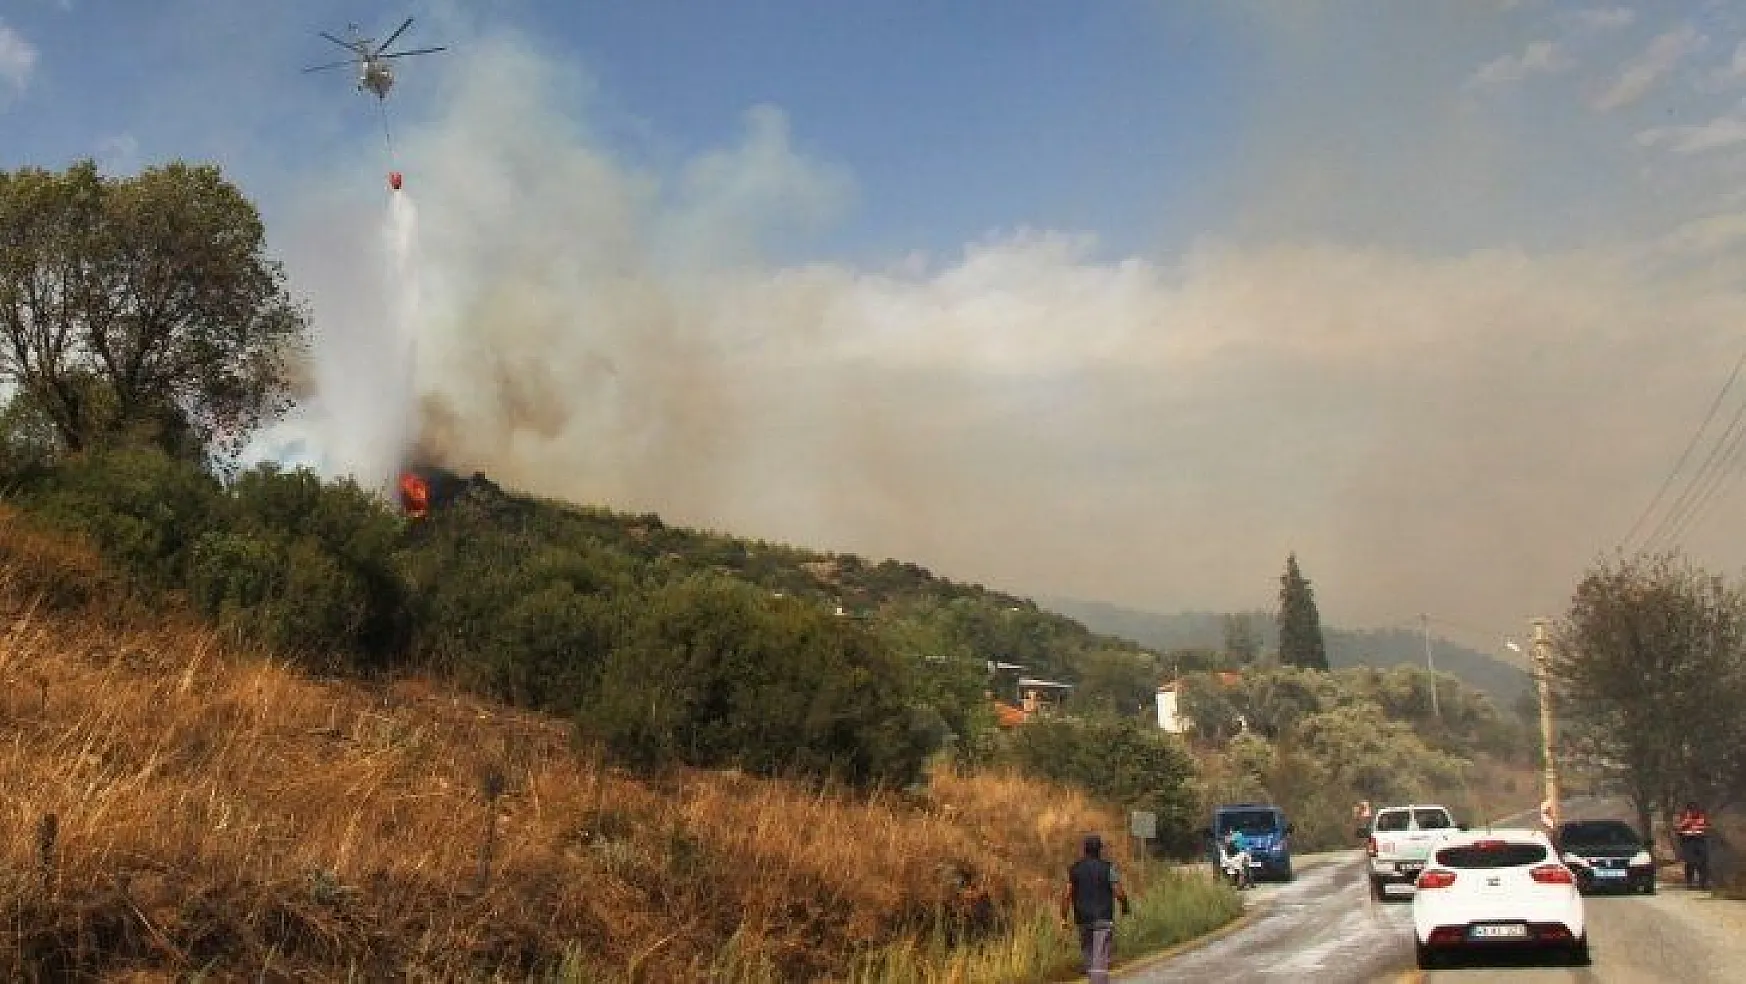 Ormancı türküsünün yakıldığı mahallede korkutan yangın